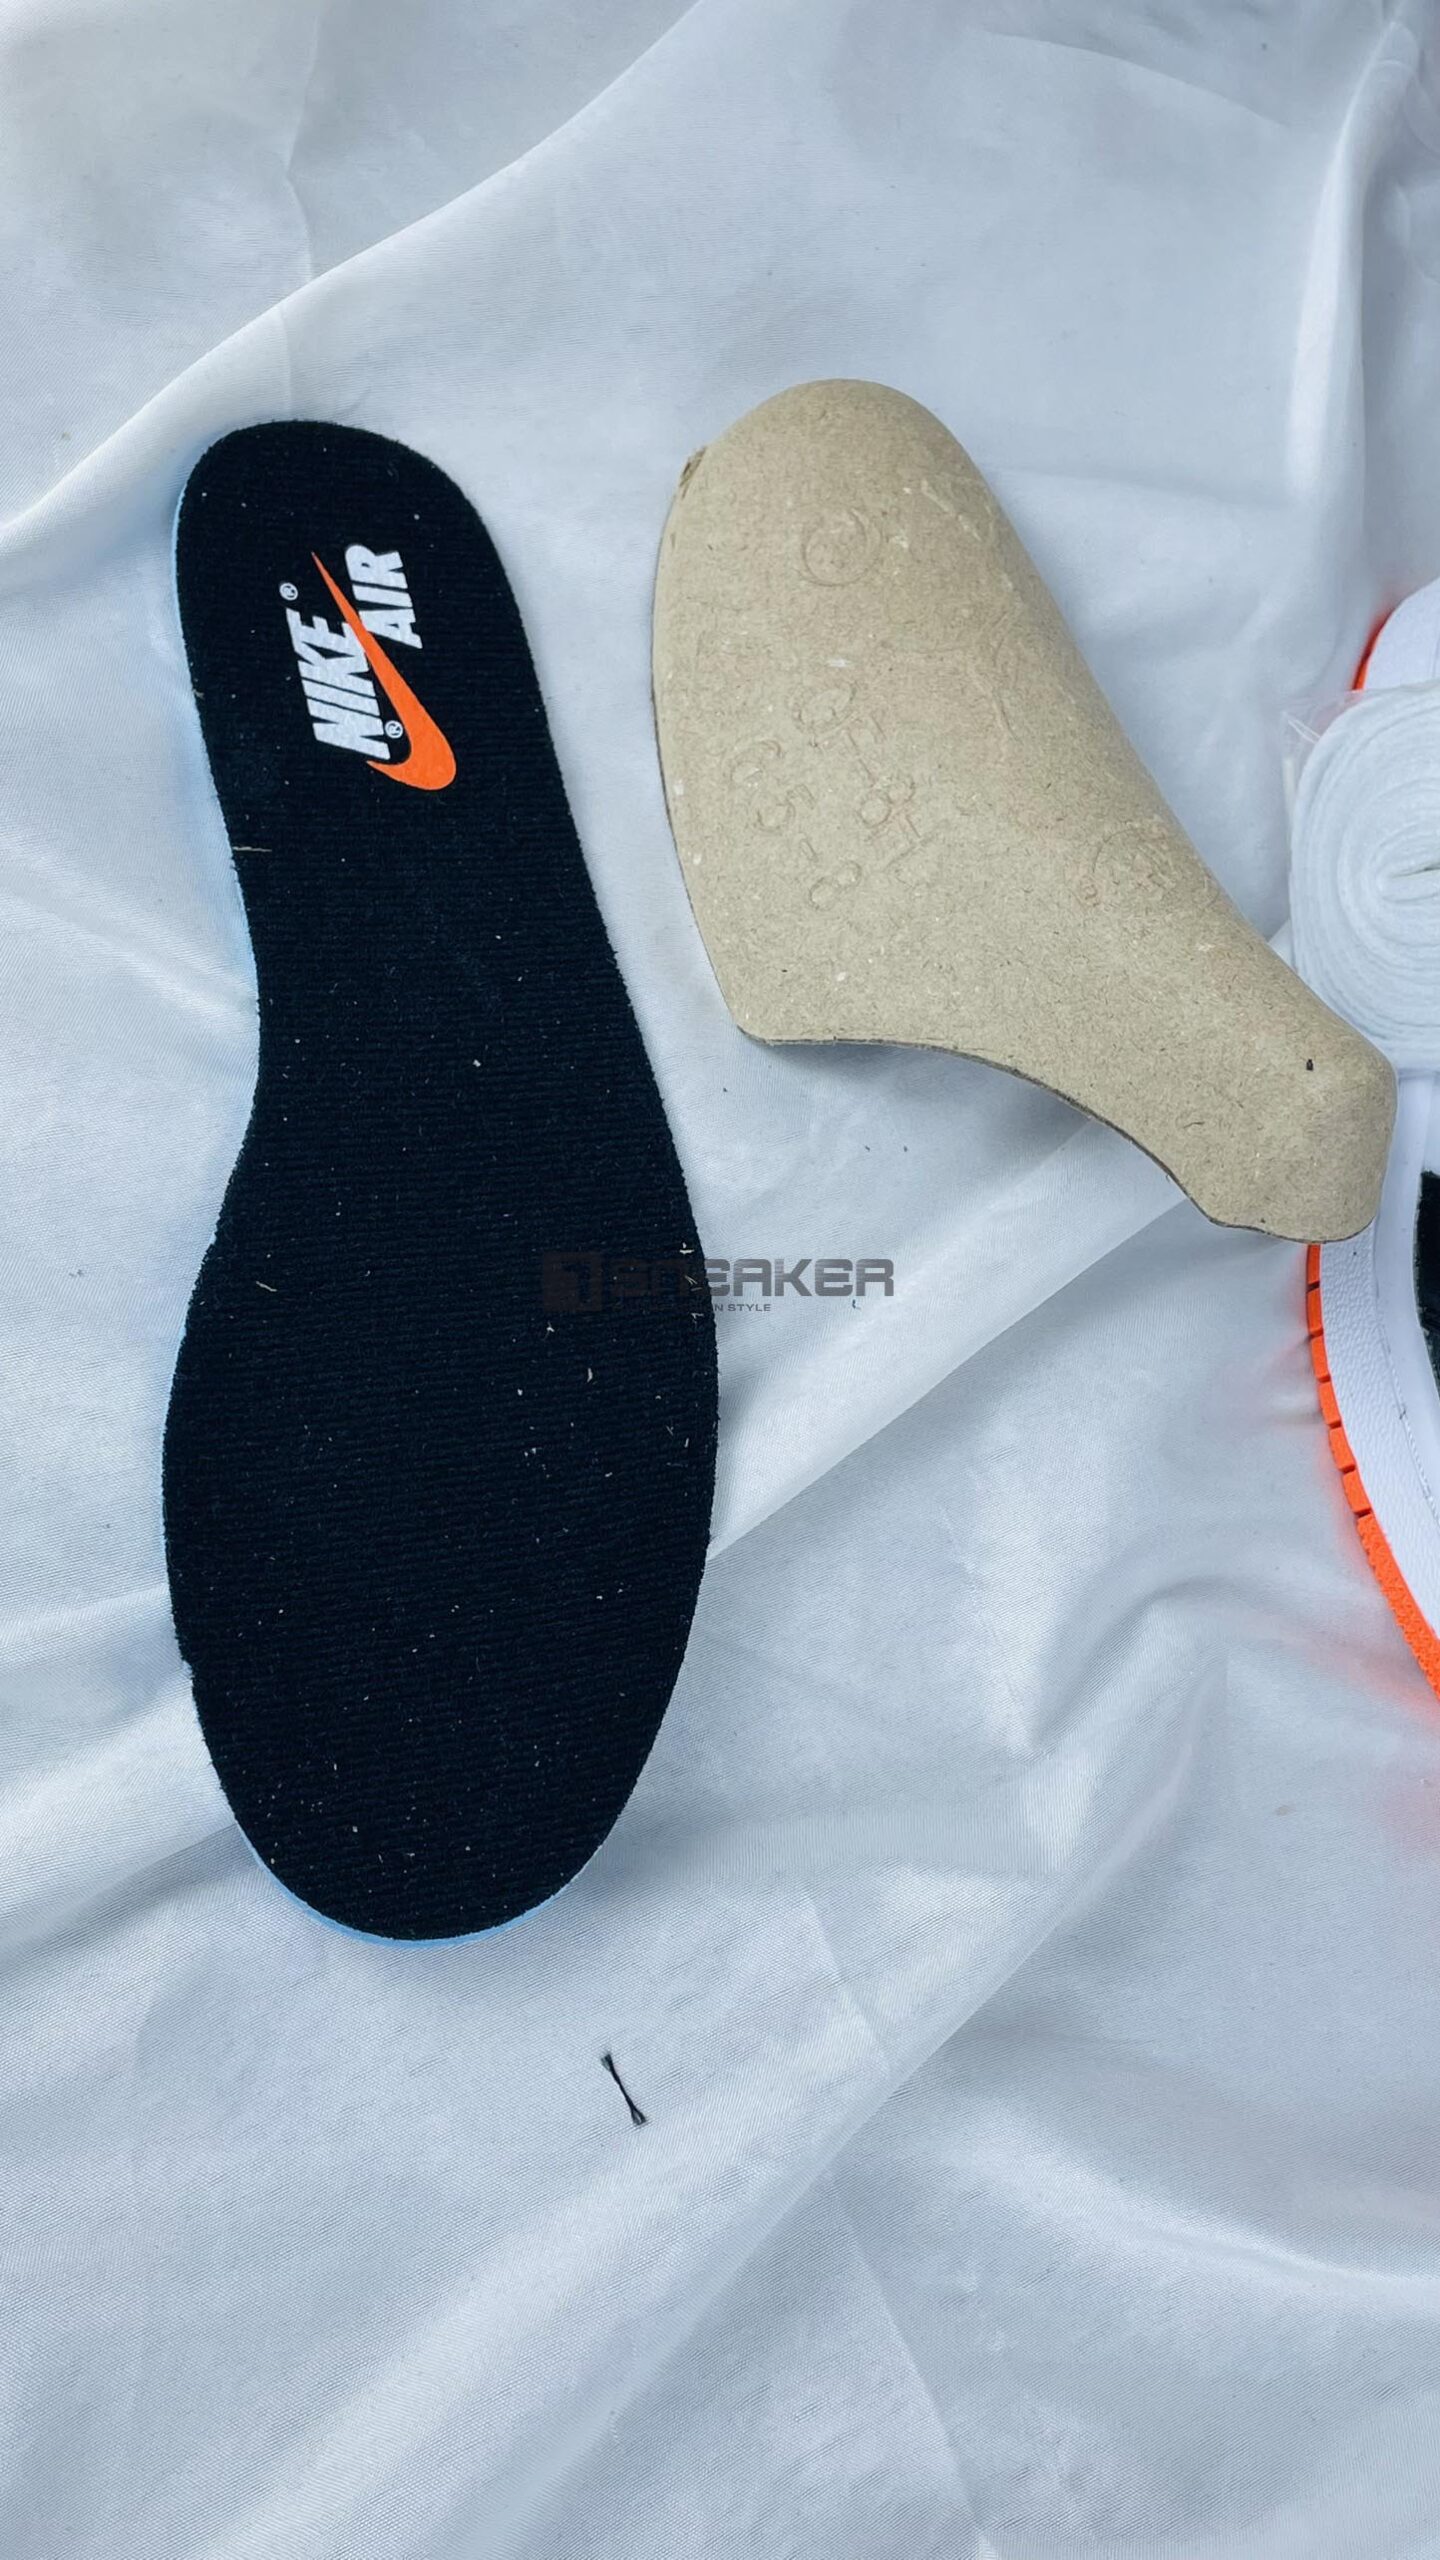 Giày Nike Air Jordan 1 Retro High OG Electro Orange miếng lót và logo chuẩn